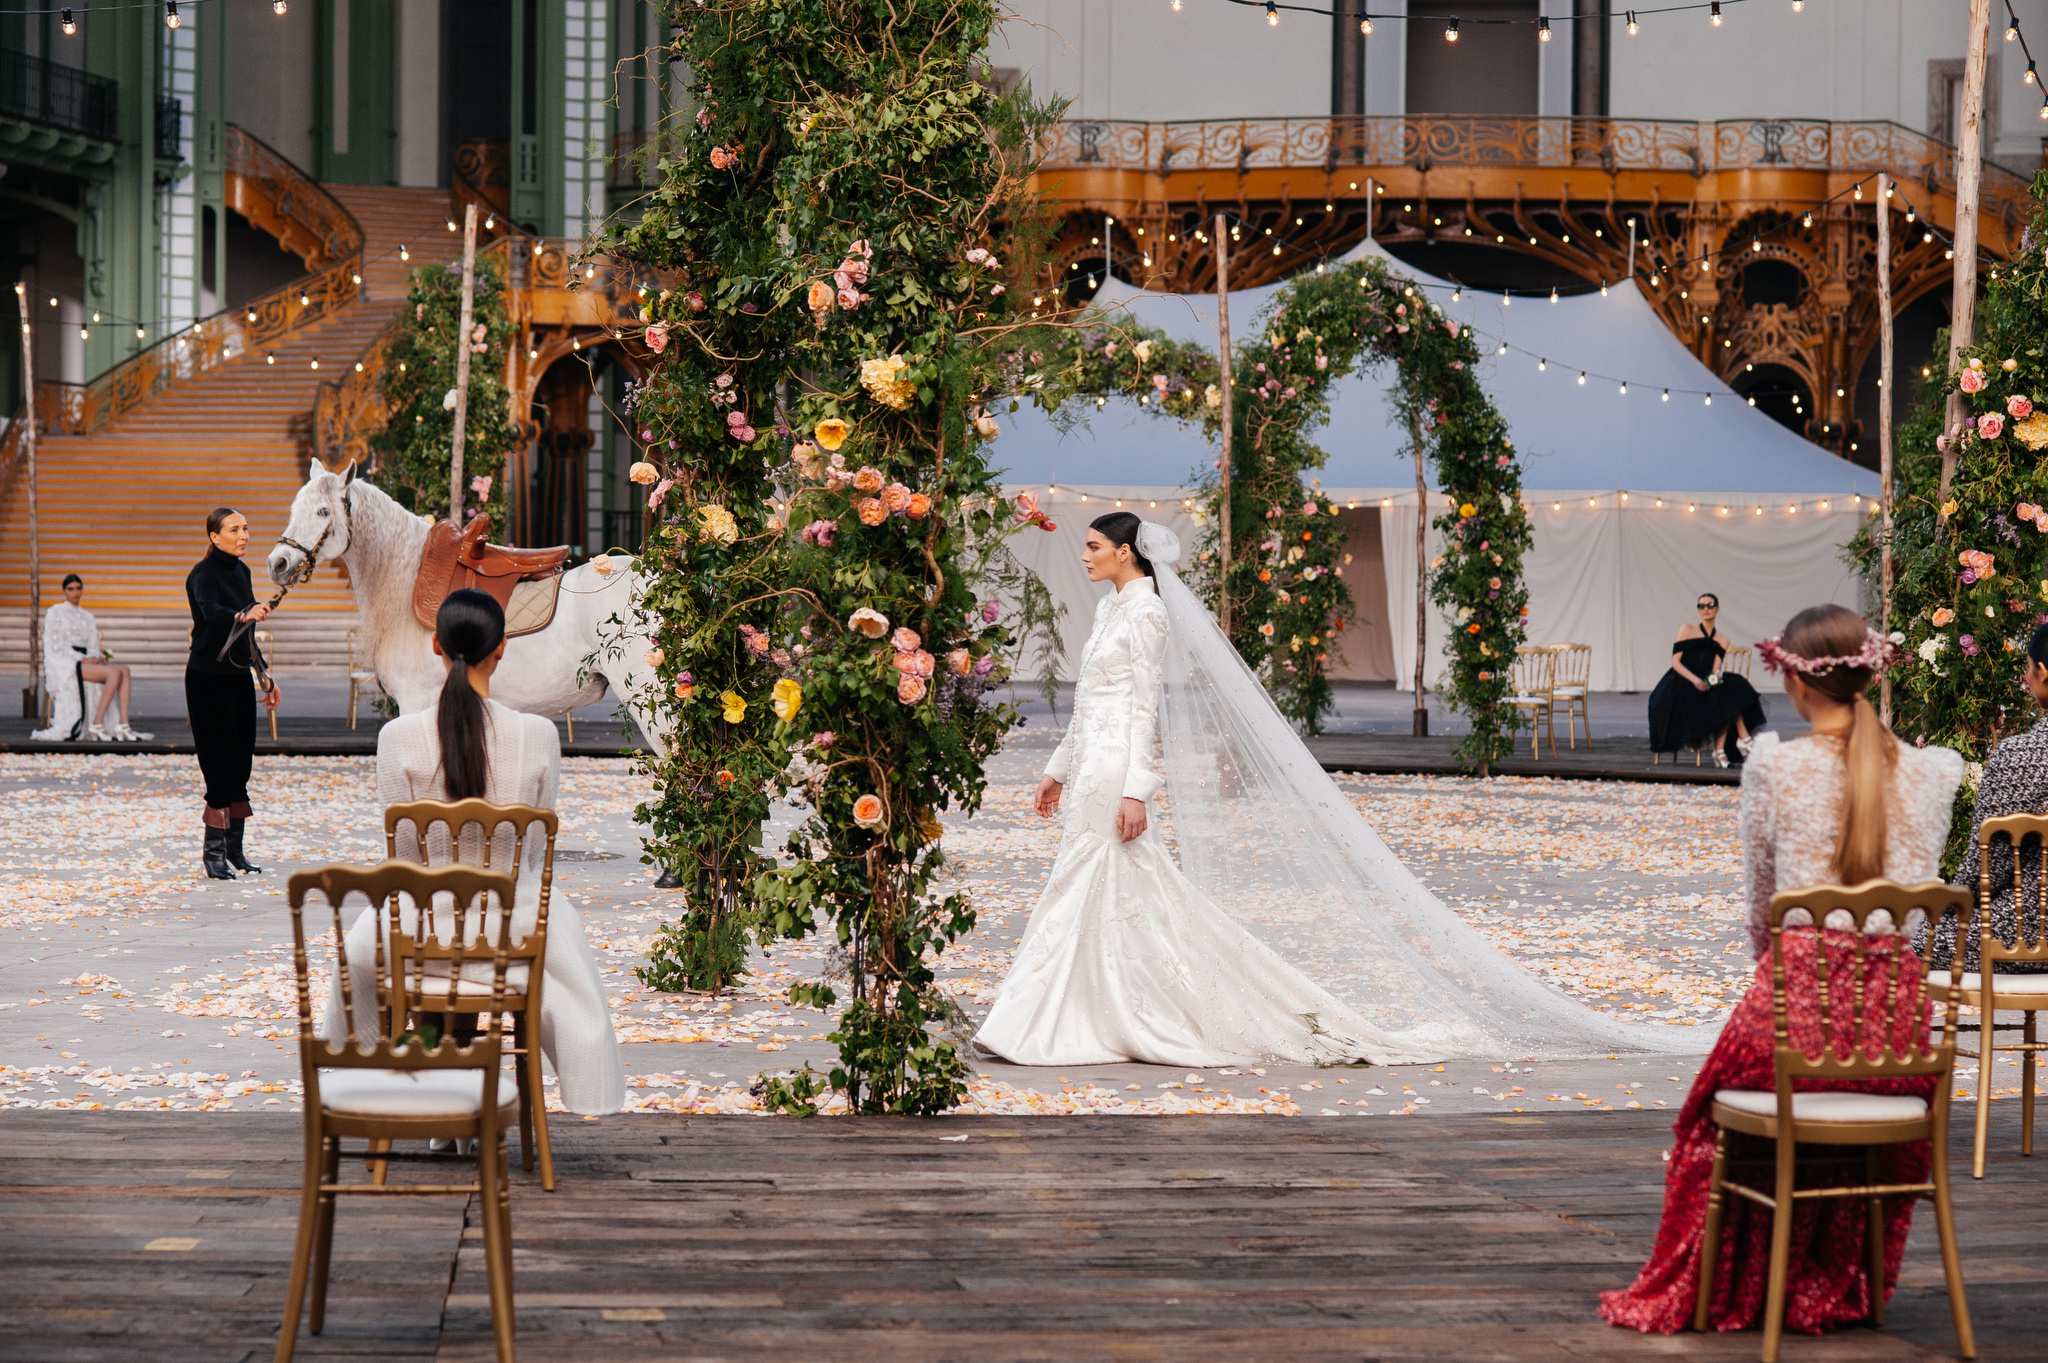 Váy cưới lấy cảm hứng từ Đệ nhất phu nhân Melania Trump